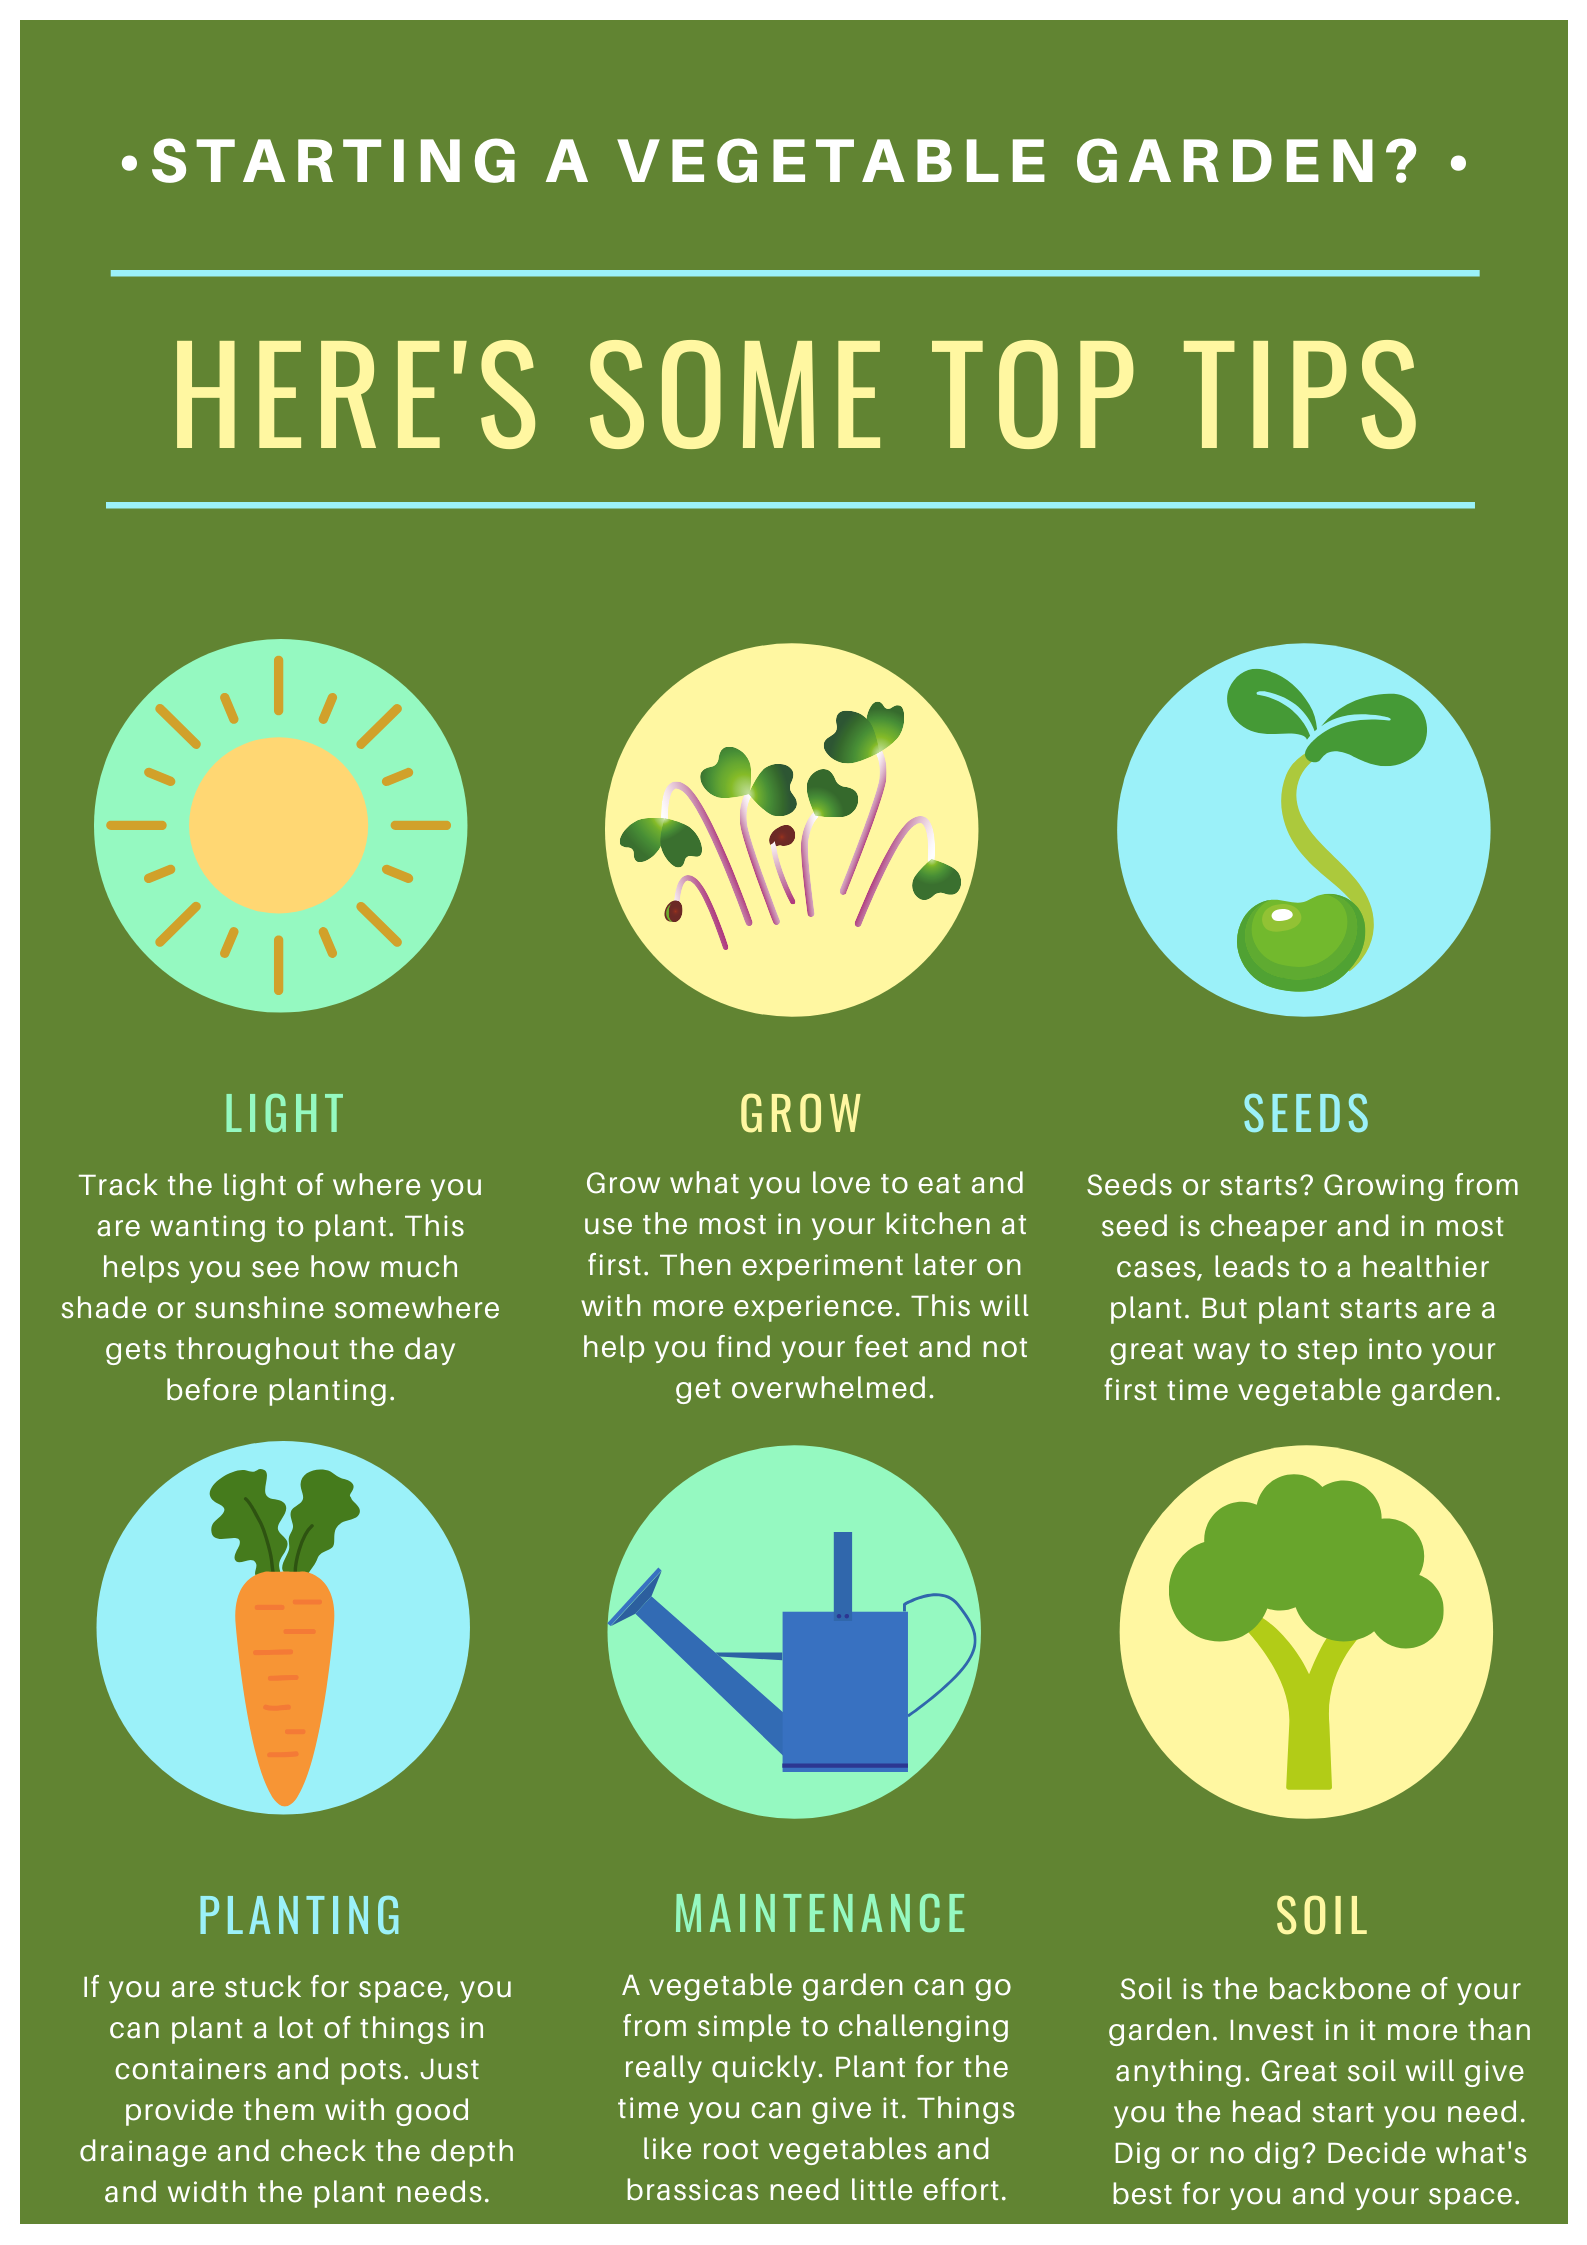 Vegetable gardening tips